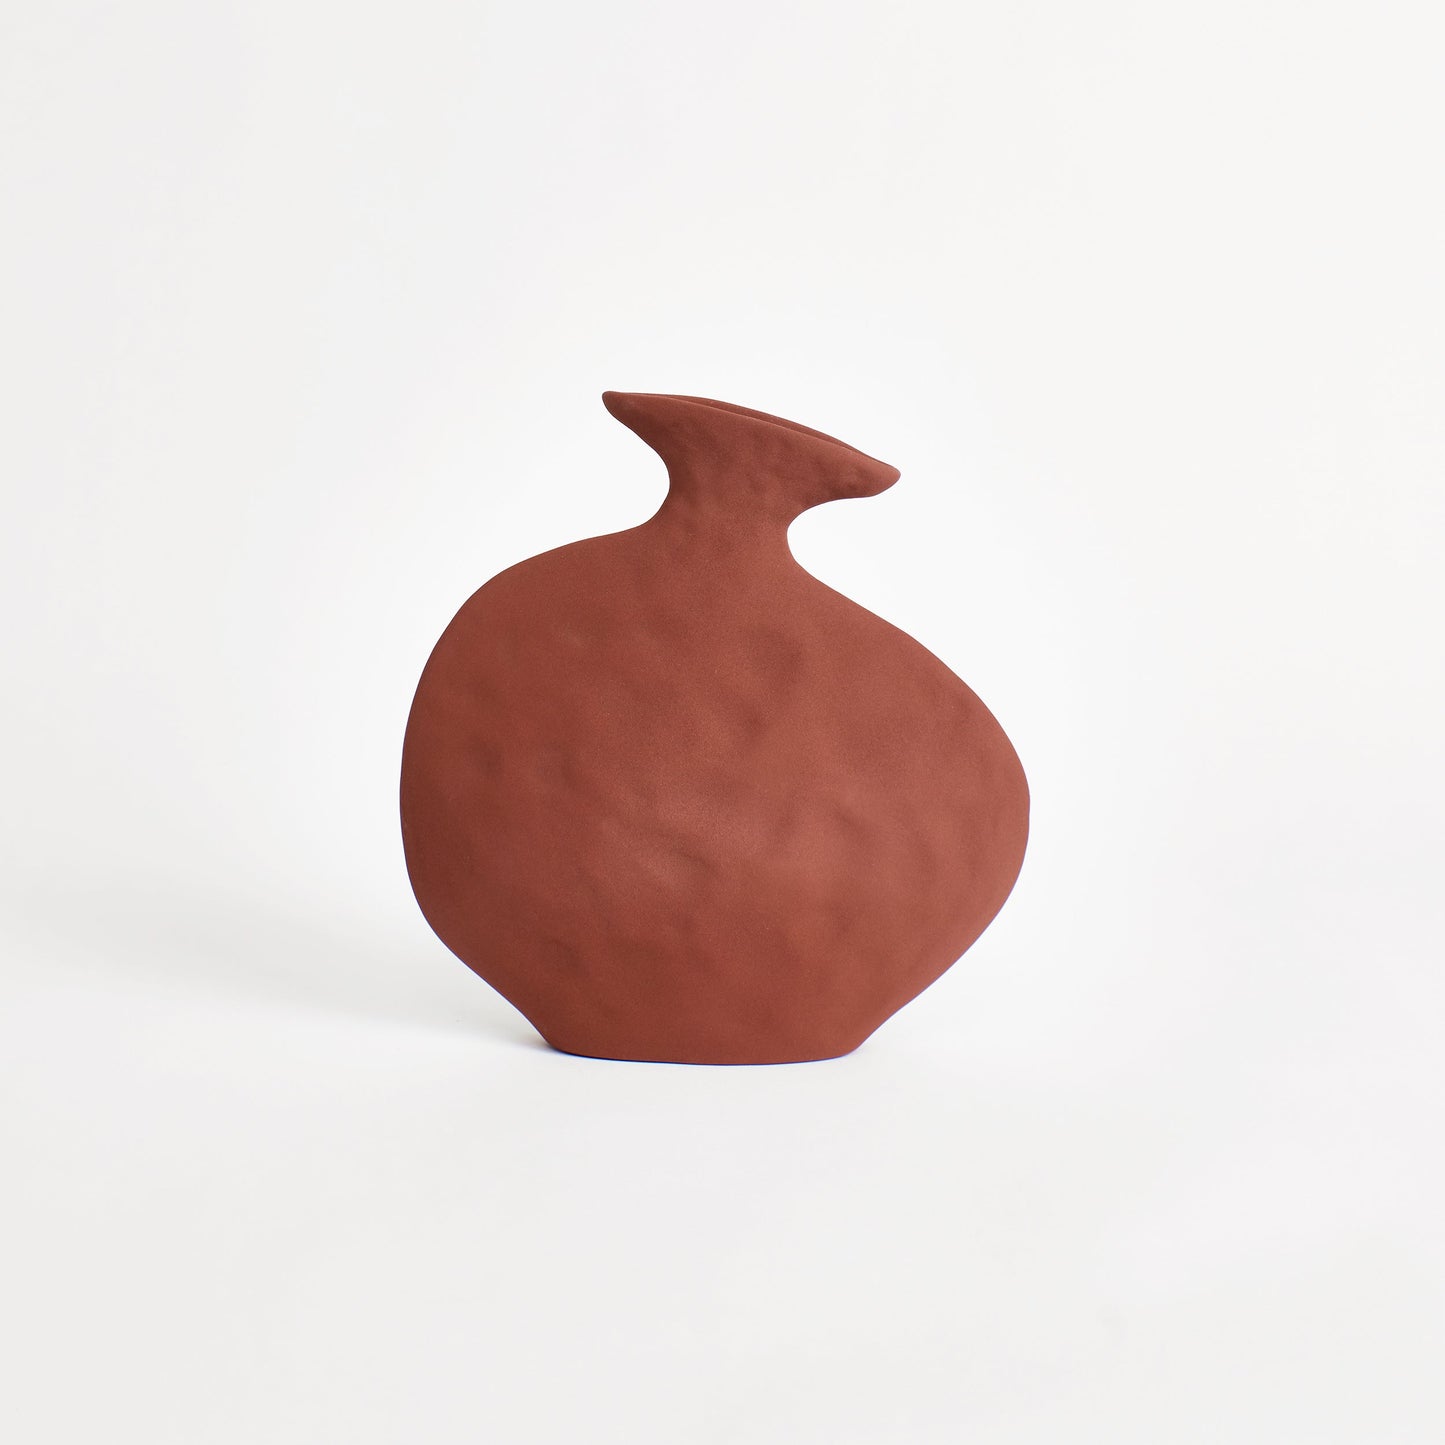 Flat Vase in Brick